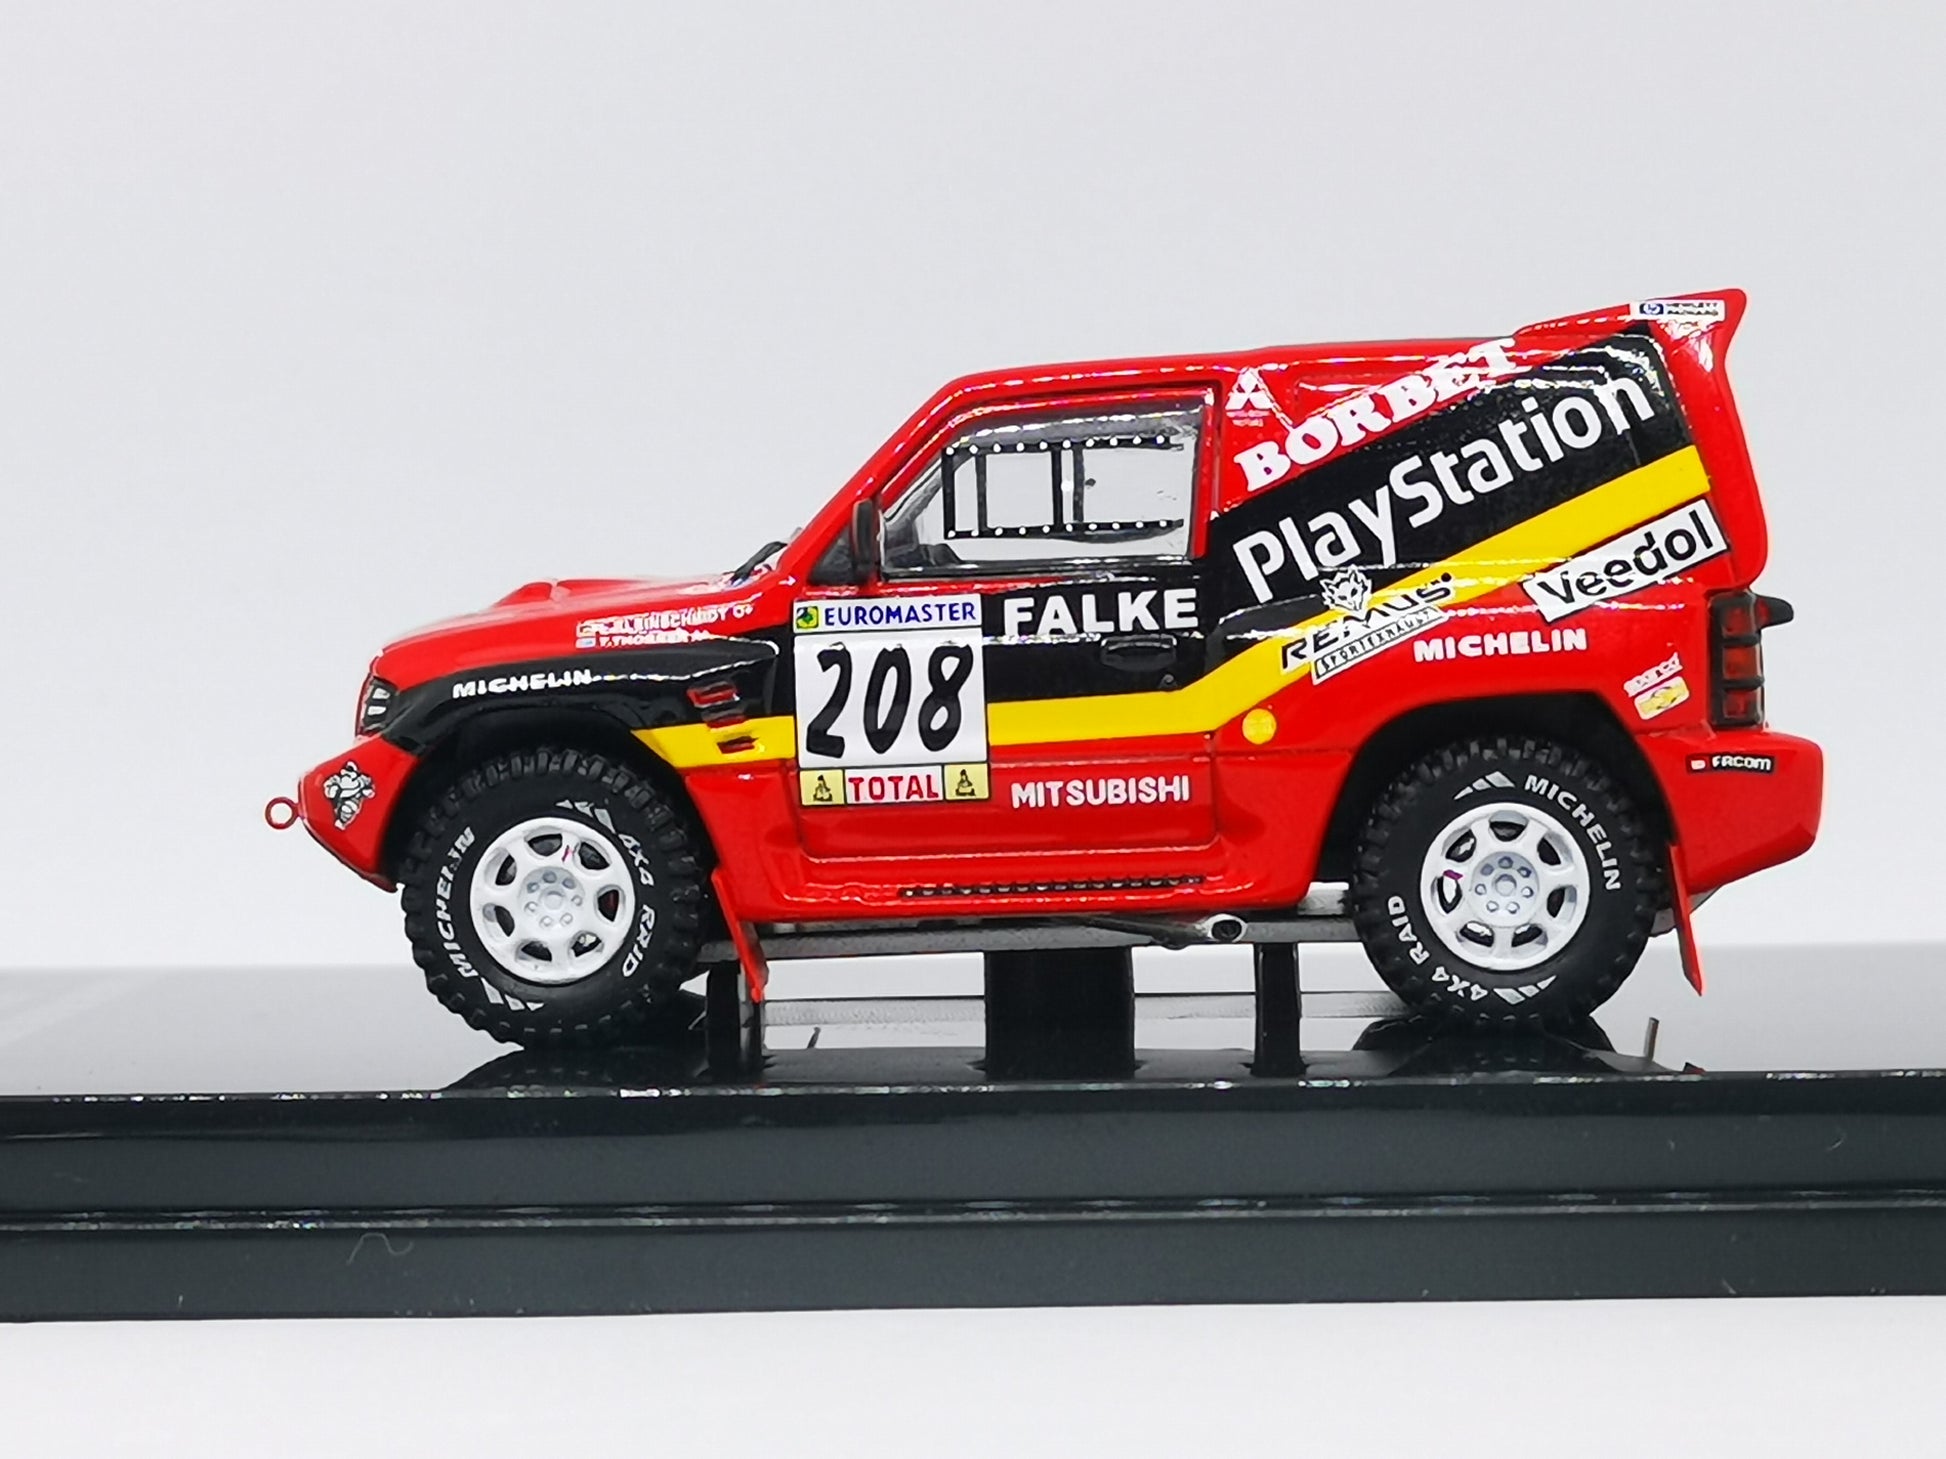 Mitsubishi - Pajero Dakar 1998 - Schuco - 1/43 - Voiture miniature